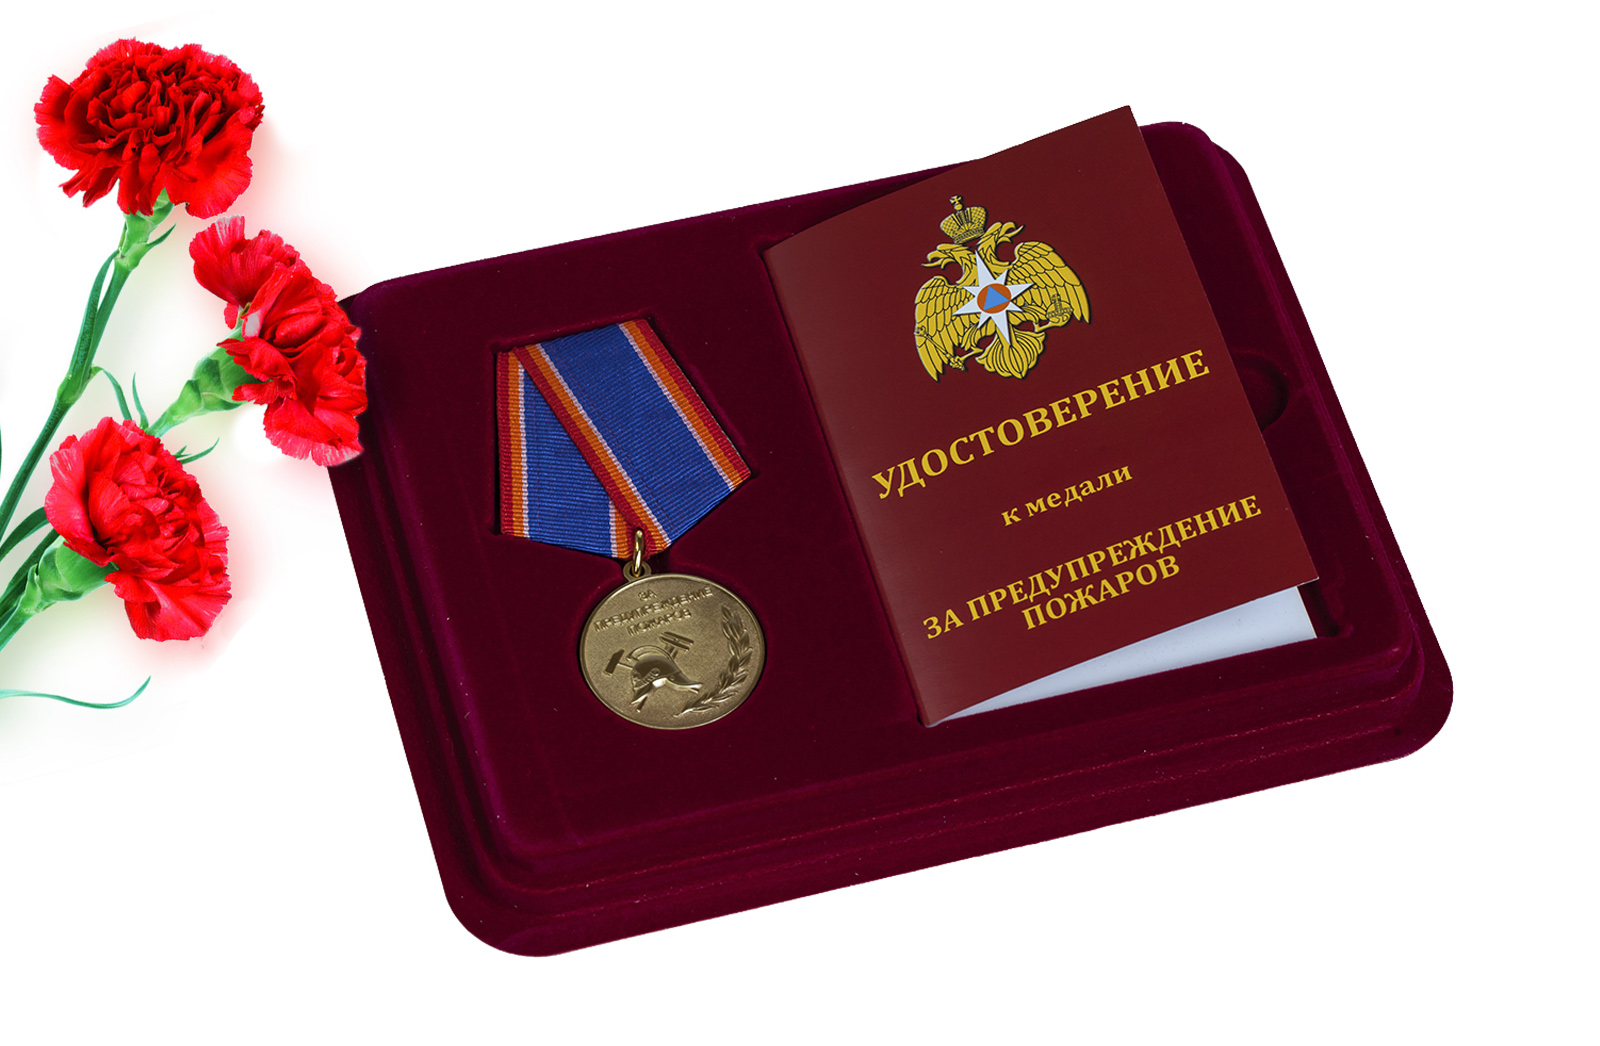 Купить медаль МЧС России За предупреждение пожаров оптом или в розницу